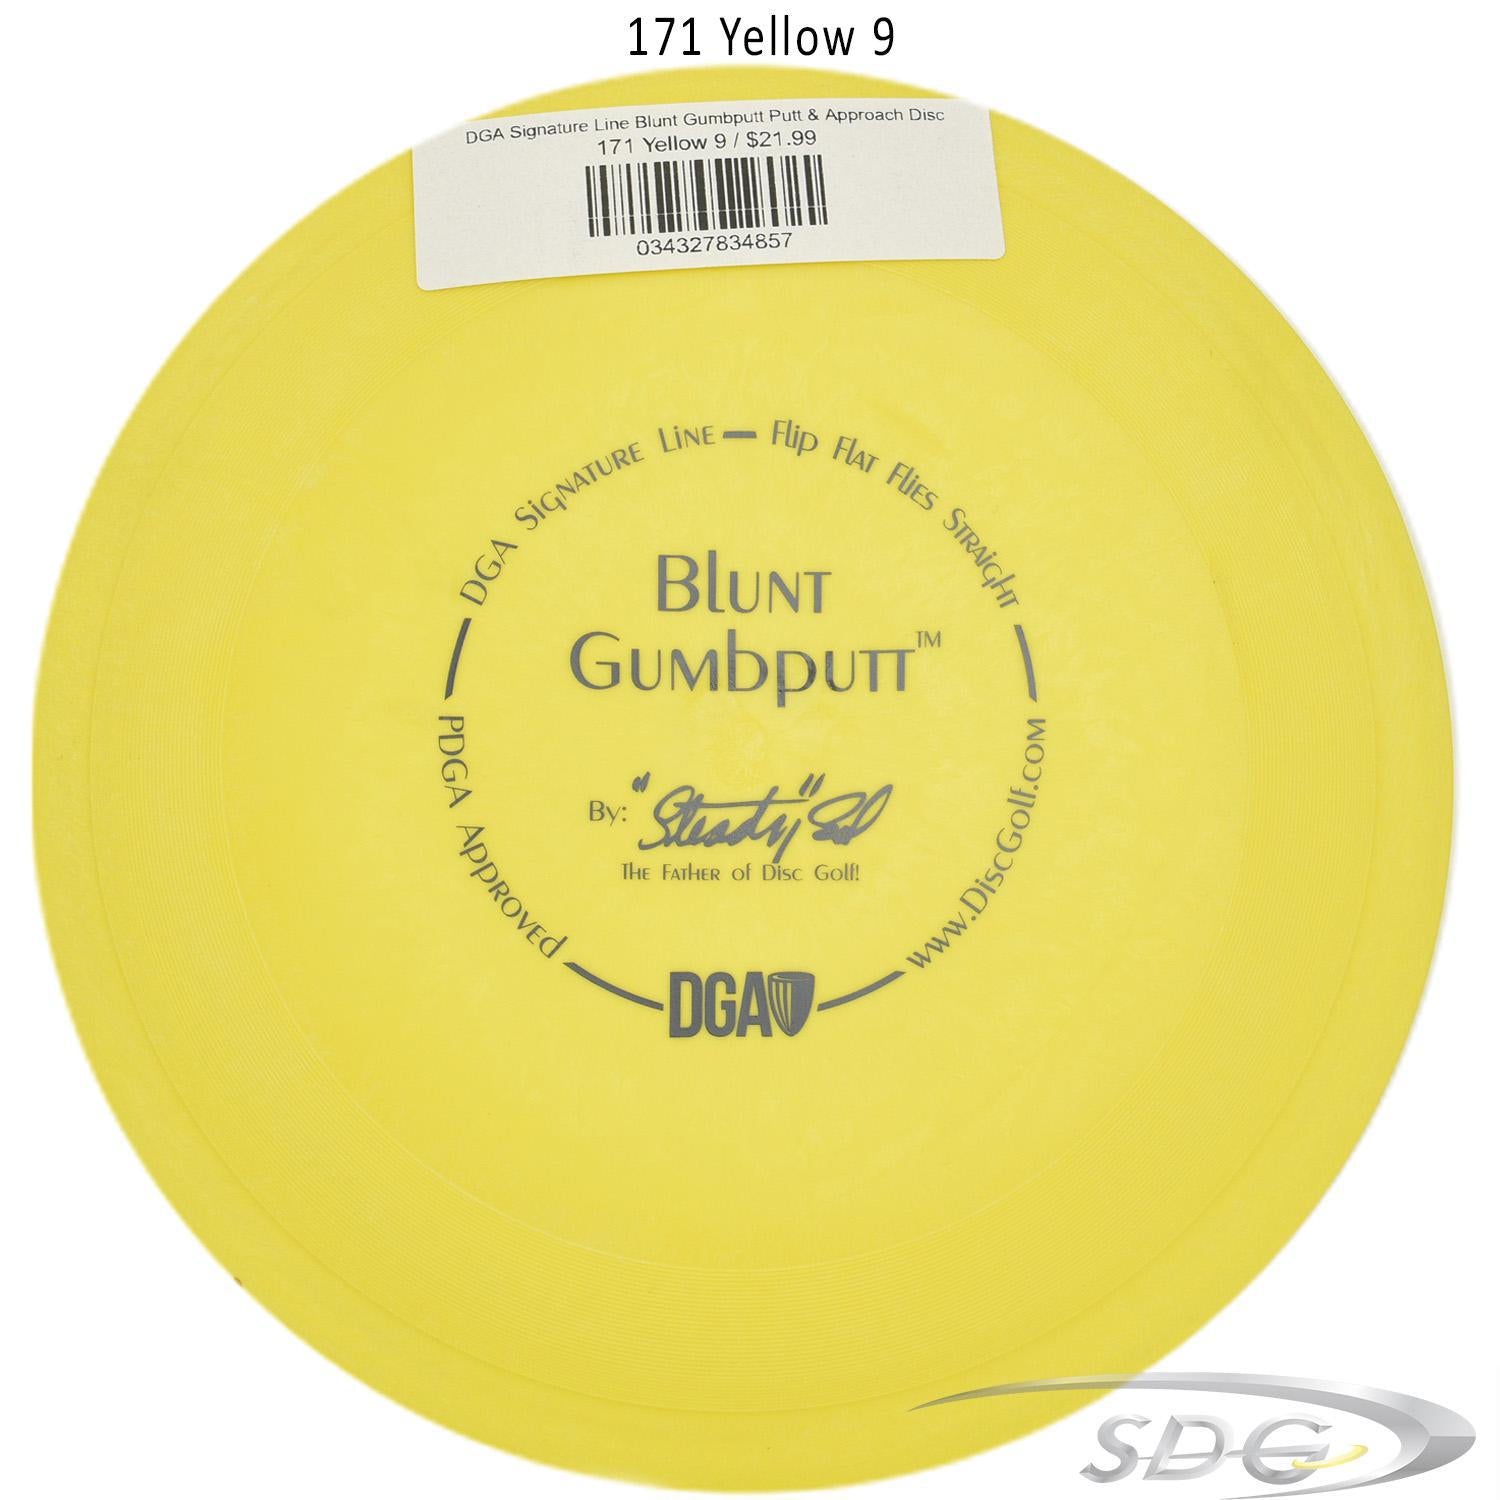 dga-signature-line-blunt-gumbputt-putt-approach-disc 171 Yellow 9 